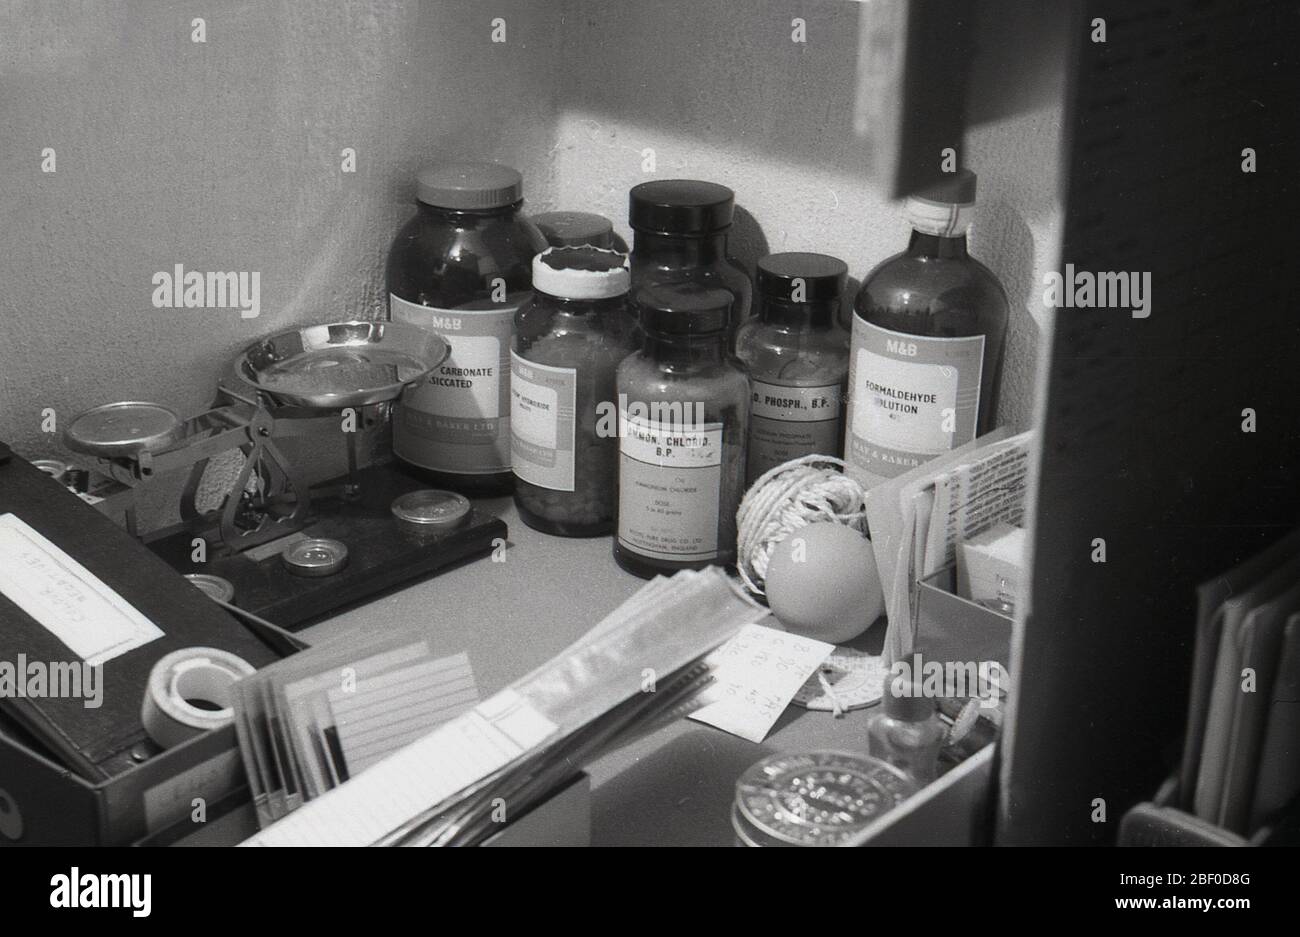 Botellas históricas de productos químicos fabricadas por May & Baker, materiales utilizados en el desarrollo de películas fotográficas, Inglaterra, Reino Unido. May & Baker fue una compañía química británica fundada en Wandsworth, Londres, en 1839. Foto de stock